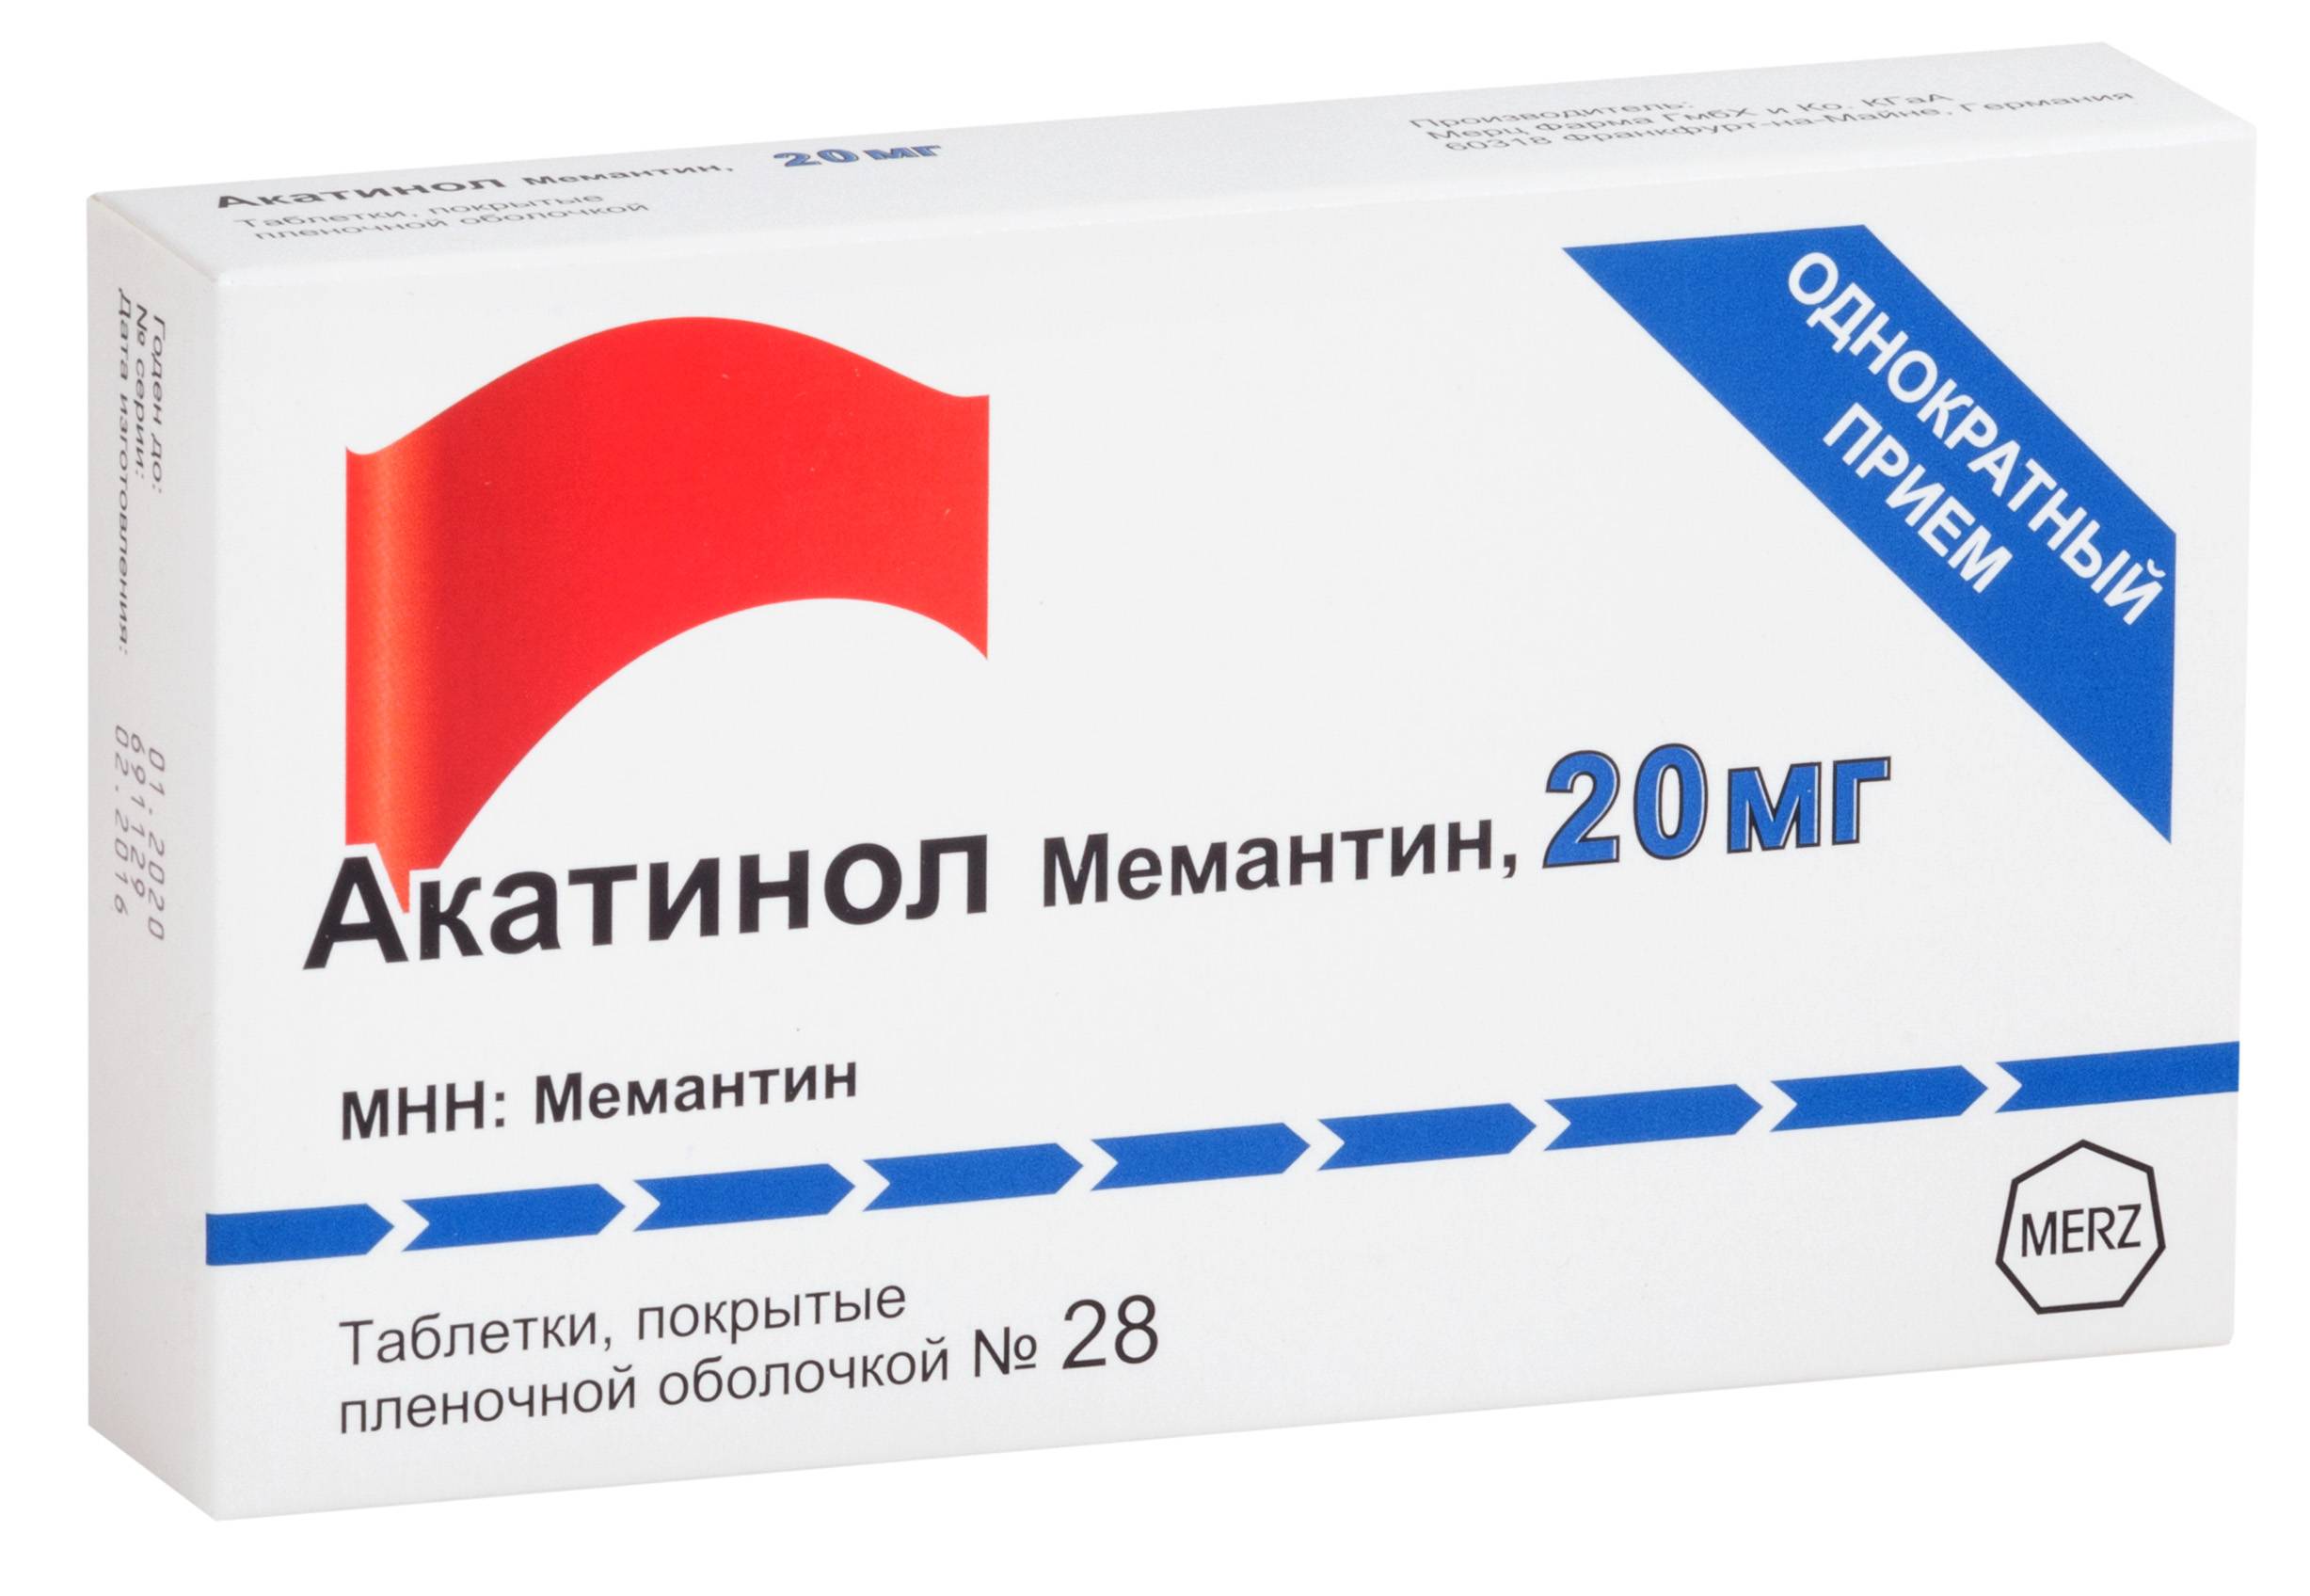 Мемантин - инструкция по применению: состав и действие препарата, цена и аналоги, отзывы о лекарстве